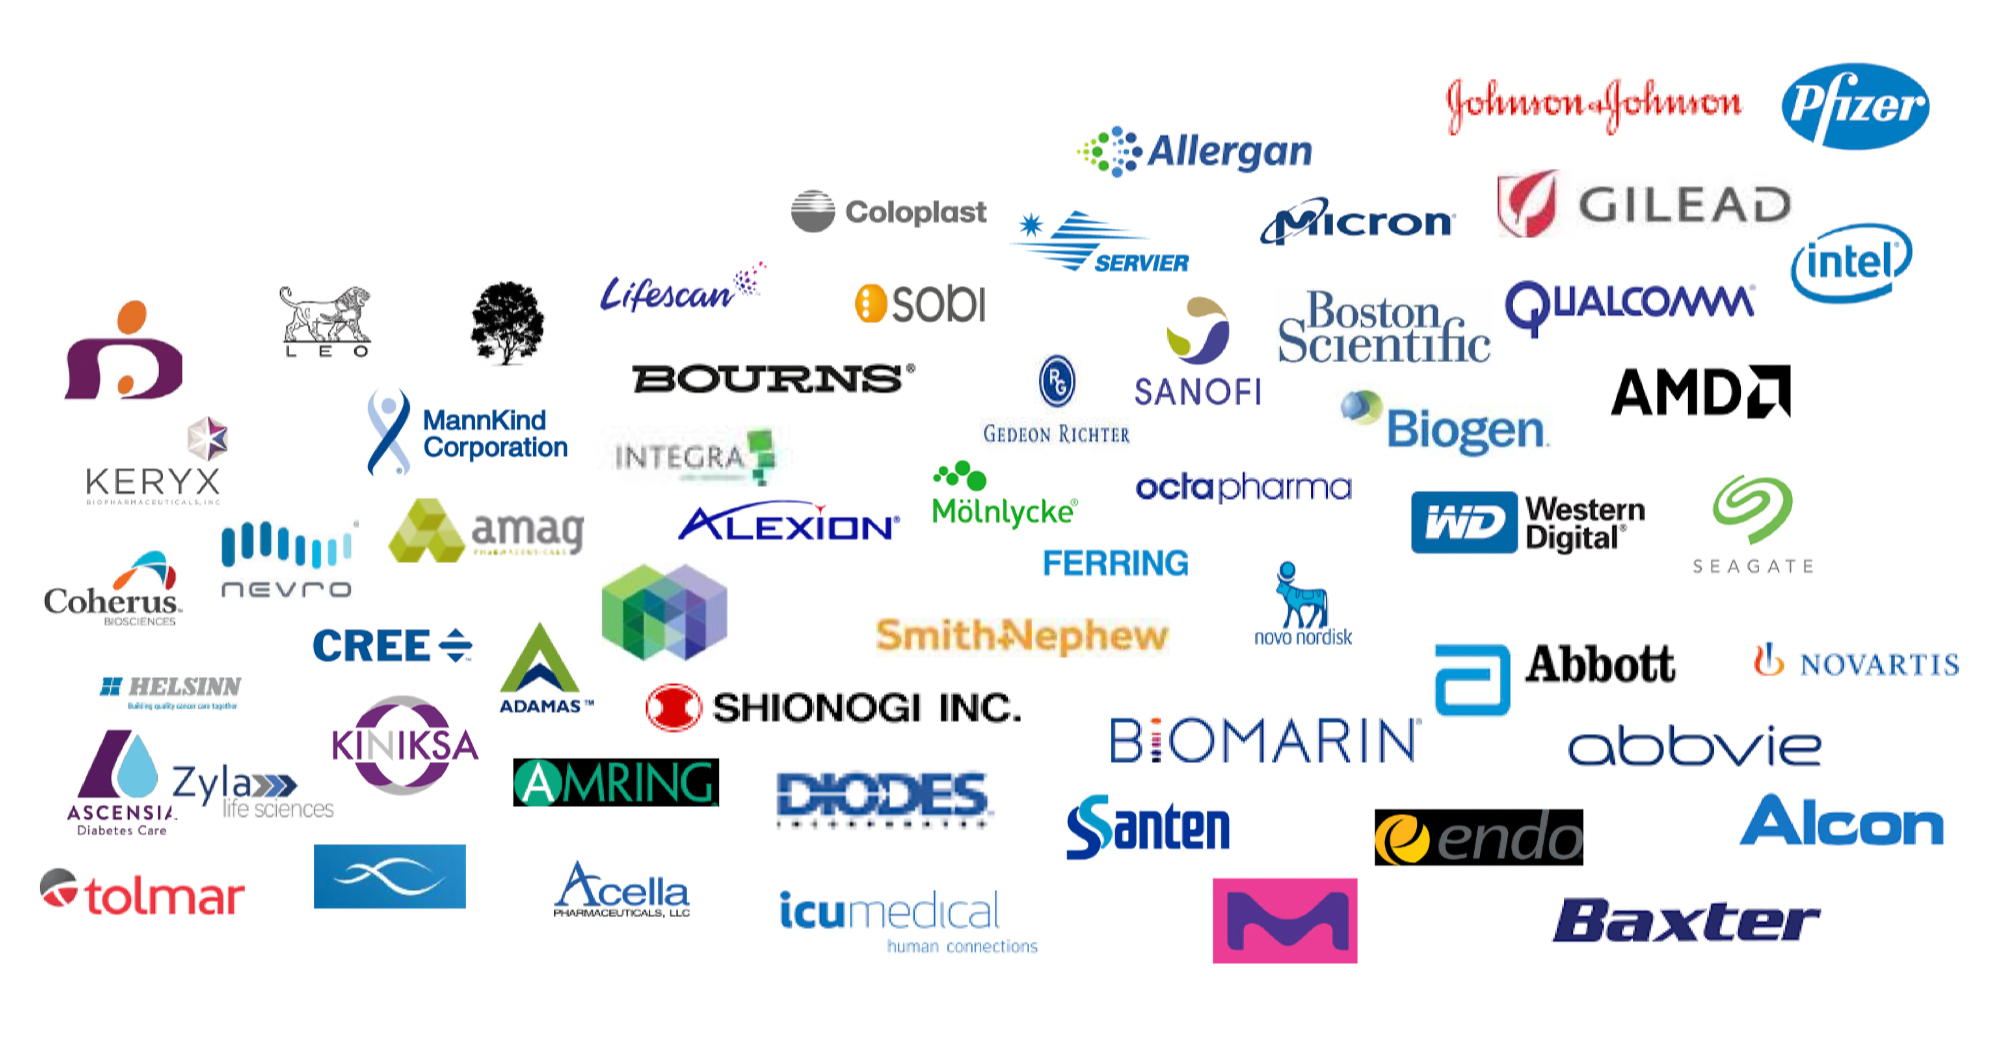 Логотипы клиентов компании. Источник: презентация компании, слайд 9